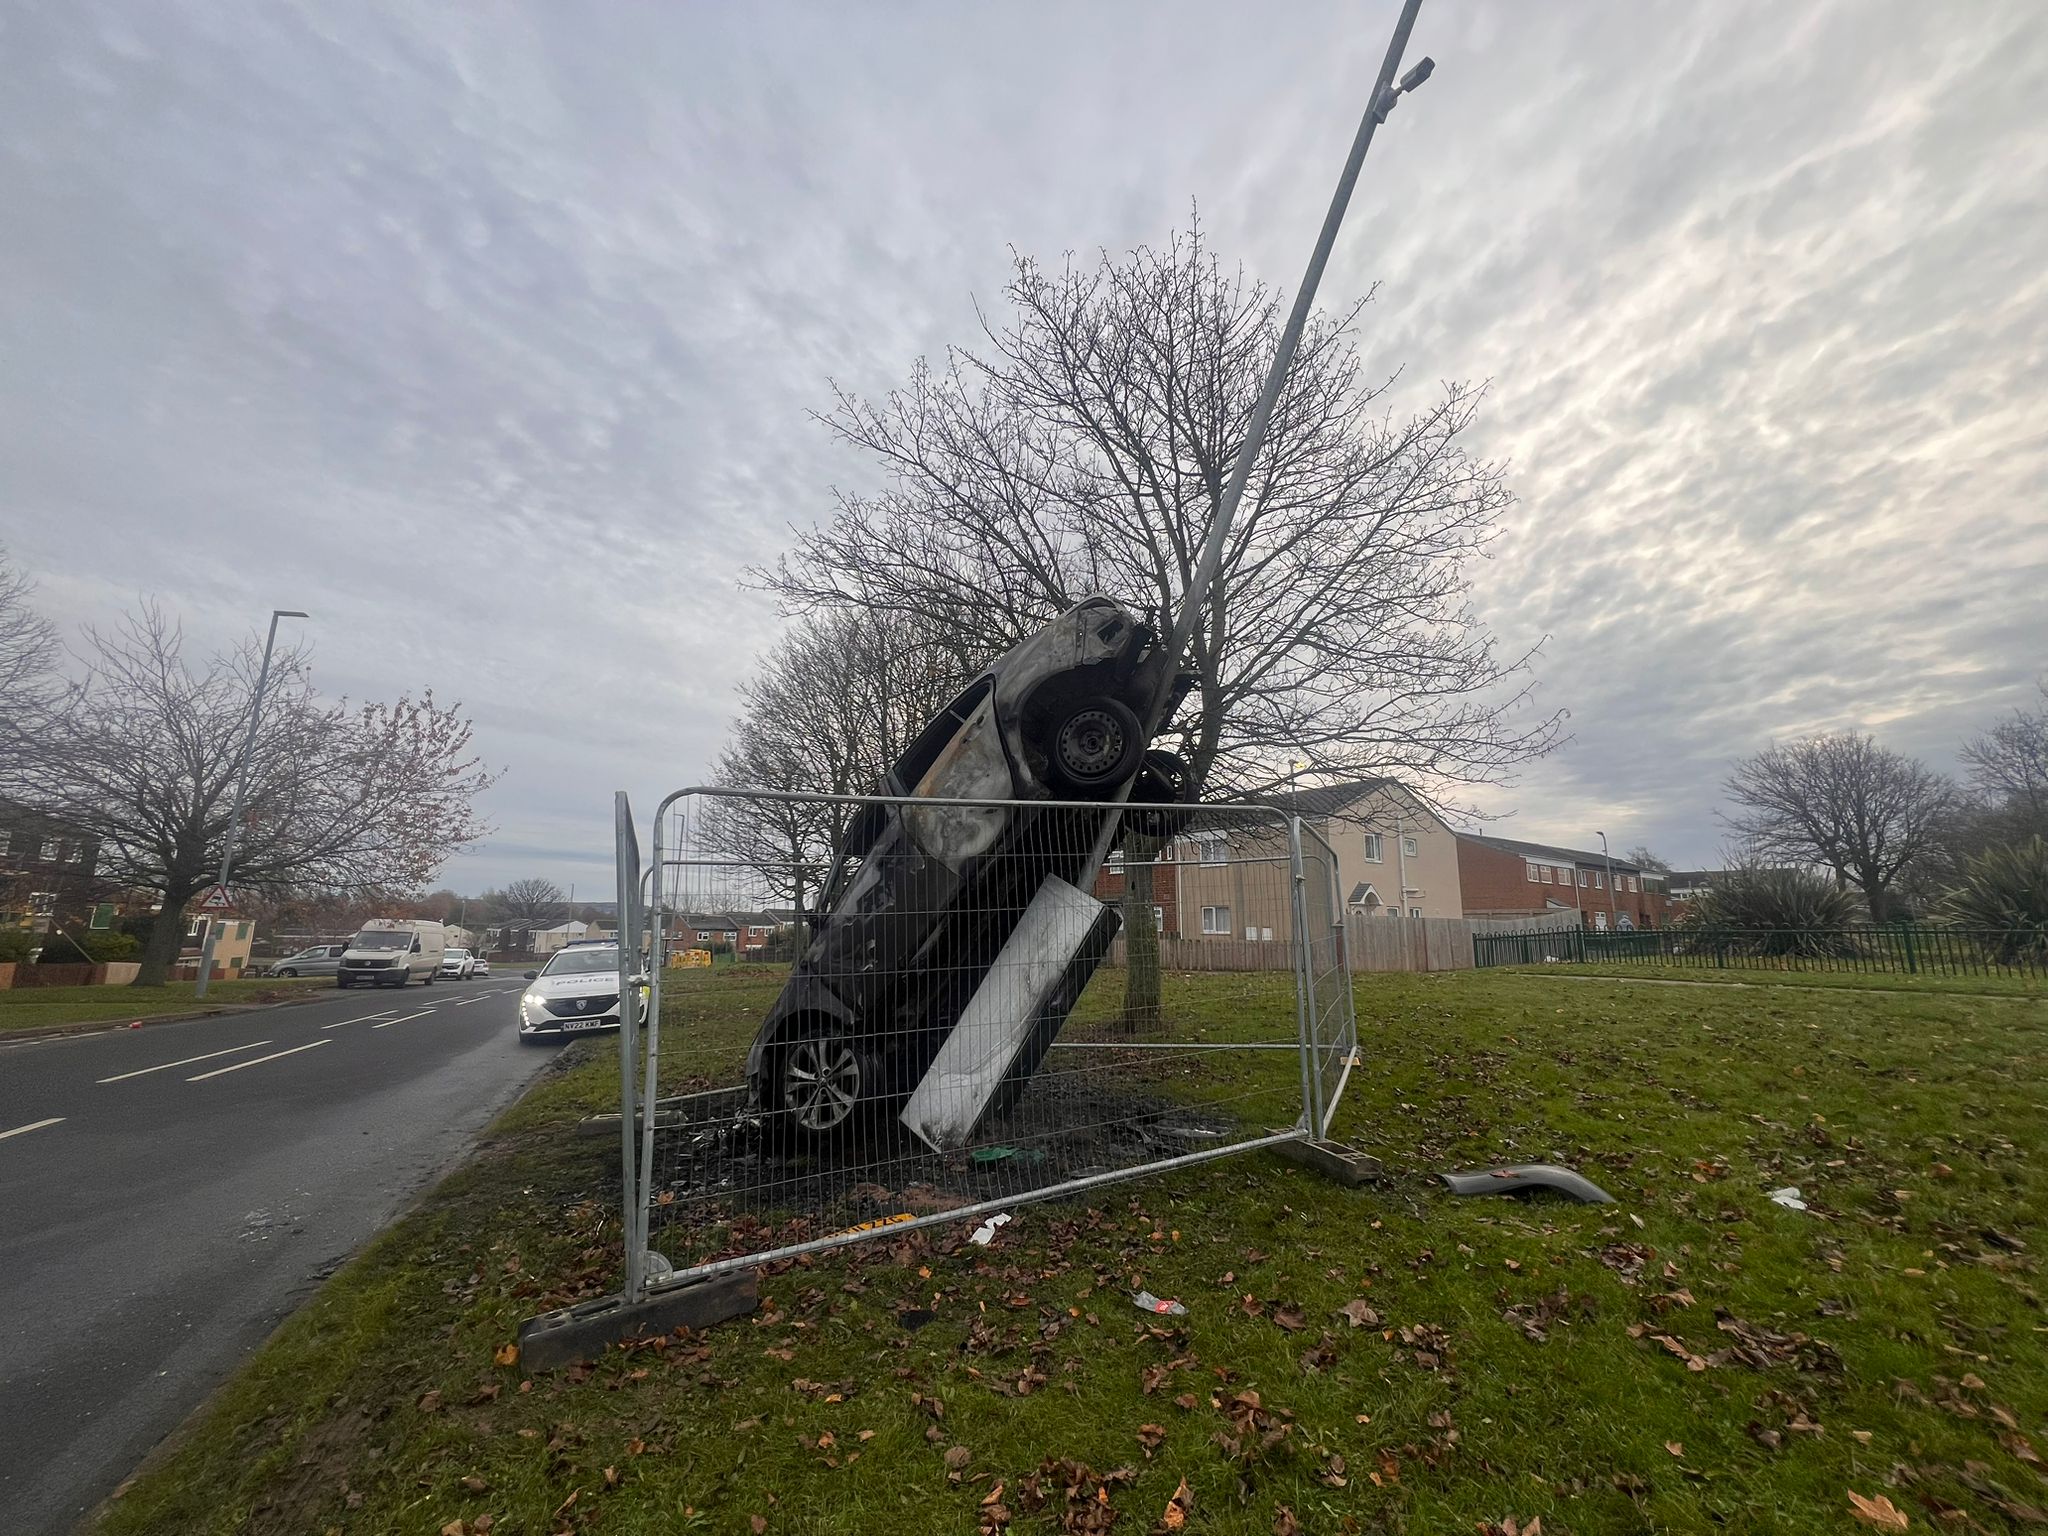 Dramatische Bilder zeigen die Folgen eines nächtlichen Unfalls in Middlesbrough